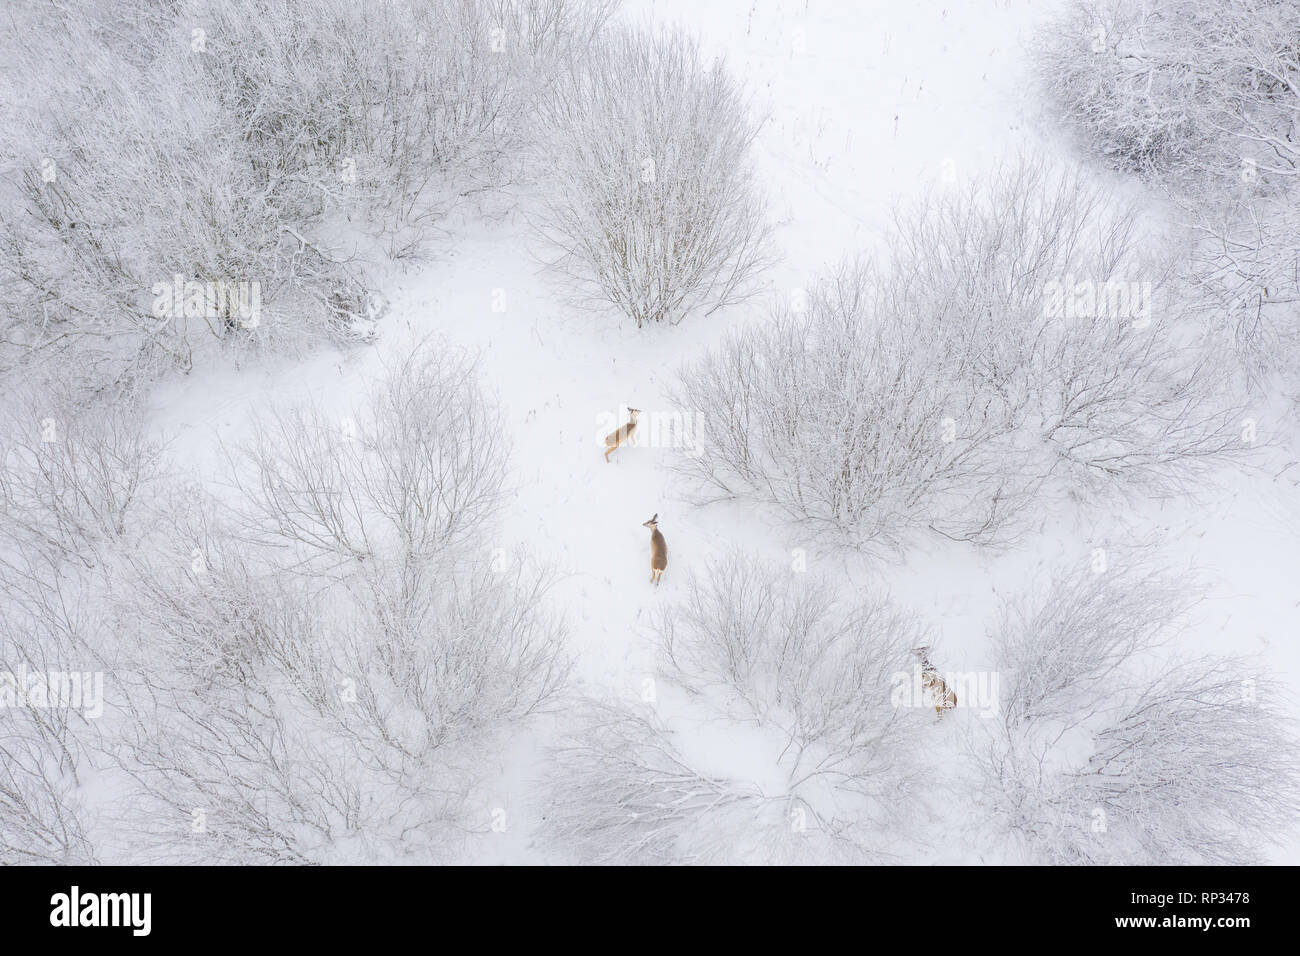 Feeding herd of roe deers in bushes, winter Stock Photo